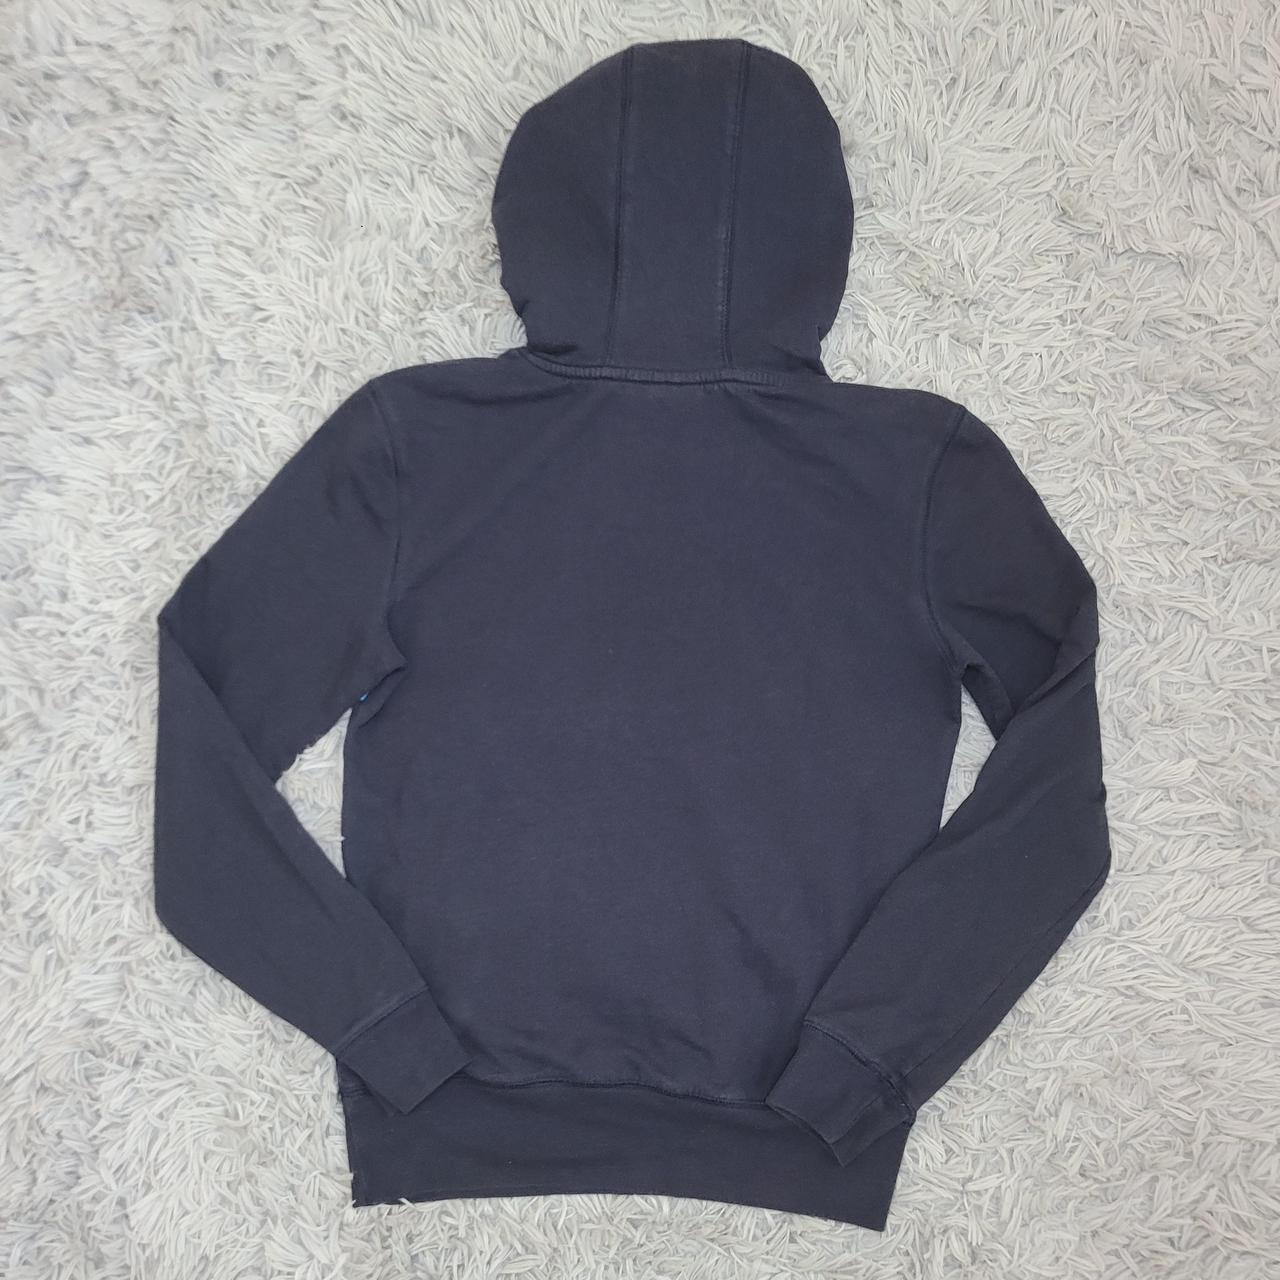 Product Image 3 - #adidas #hoodie #pullover #hoodies #sweatshirt